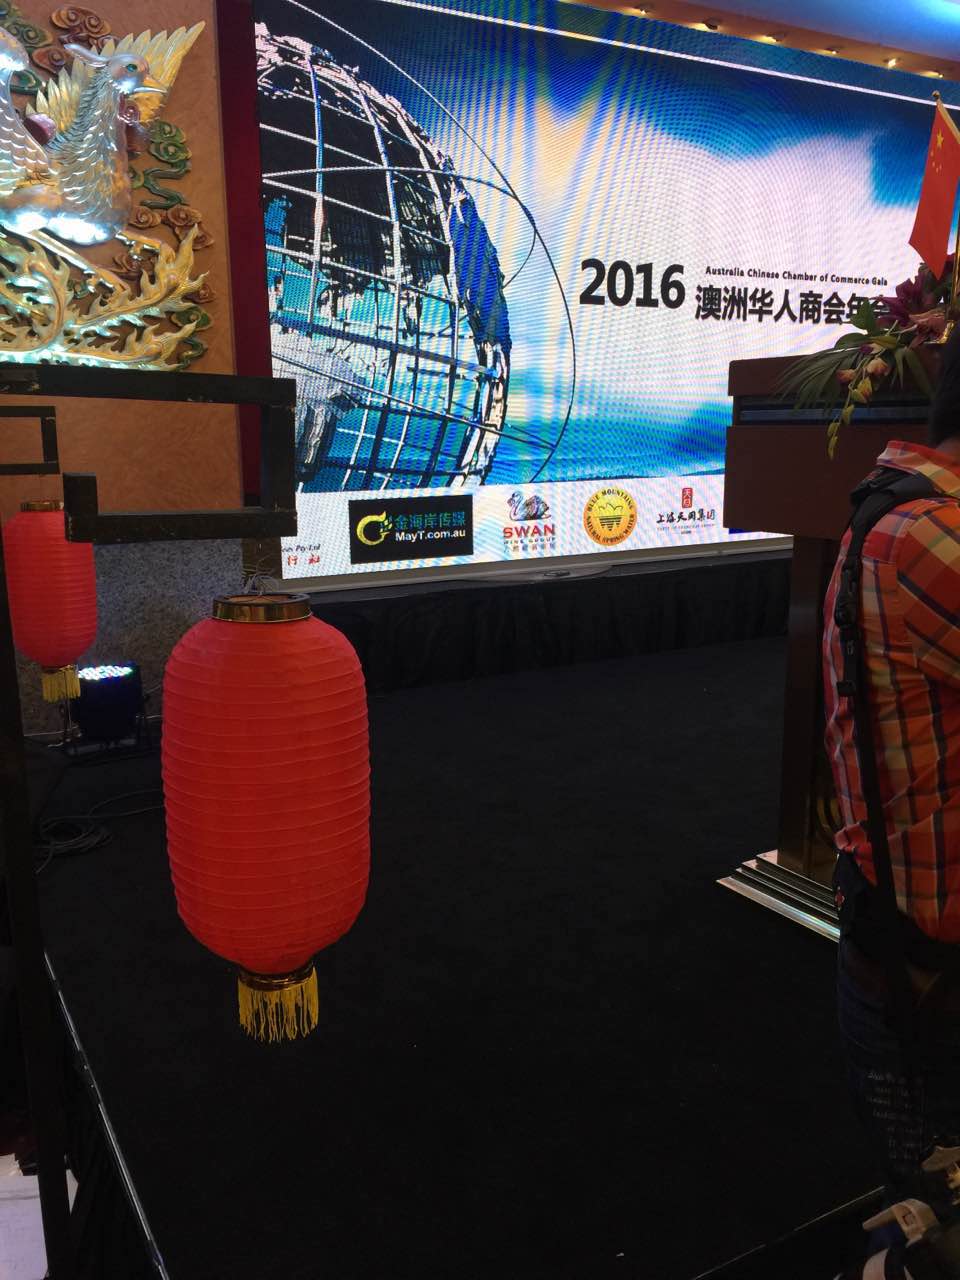 33333333333 2016年澳洲华人商会年会在悉尼盛大举行  开创资源共享合作双赢新局面 